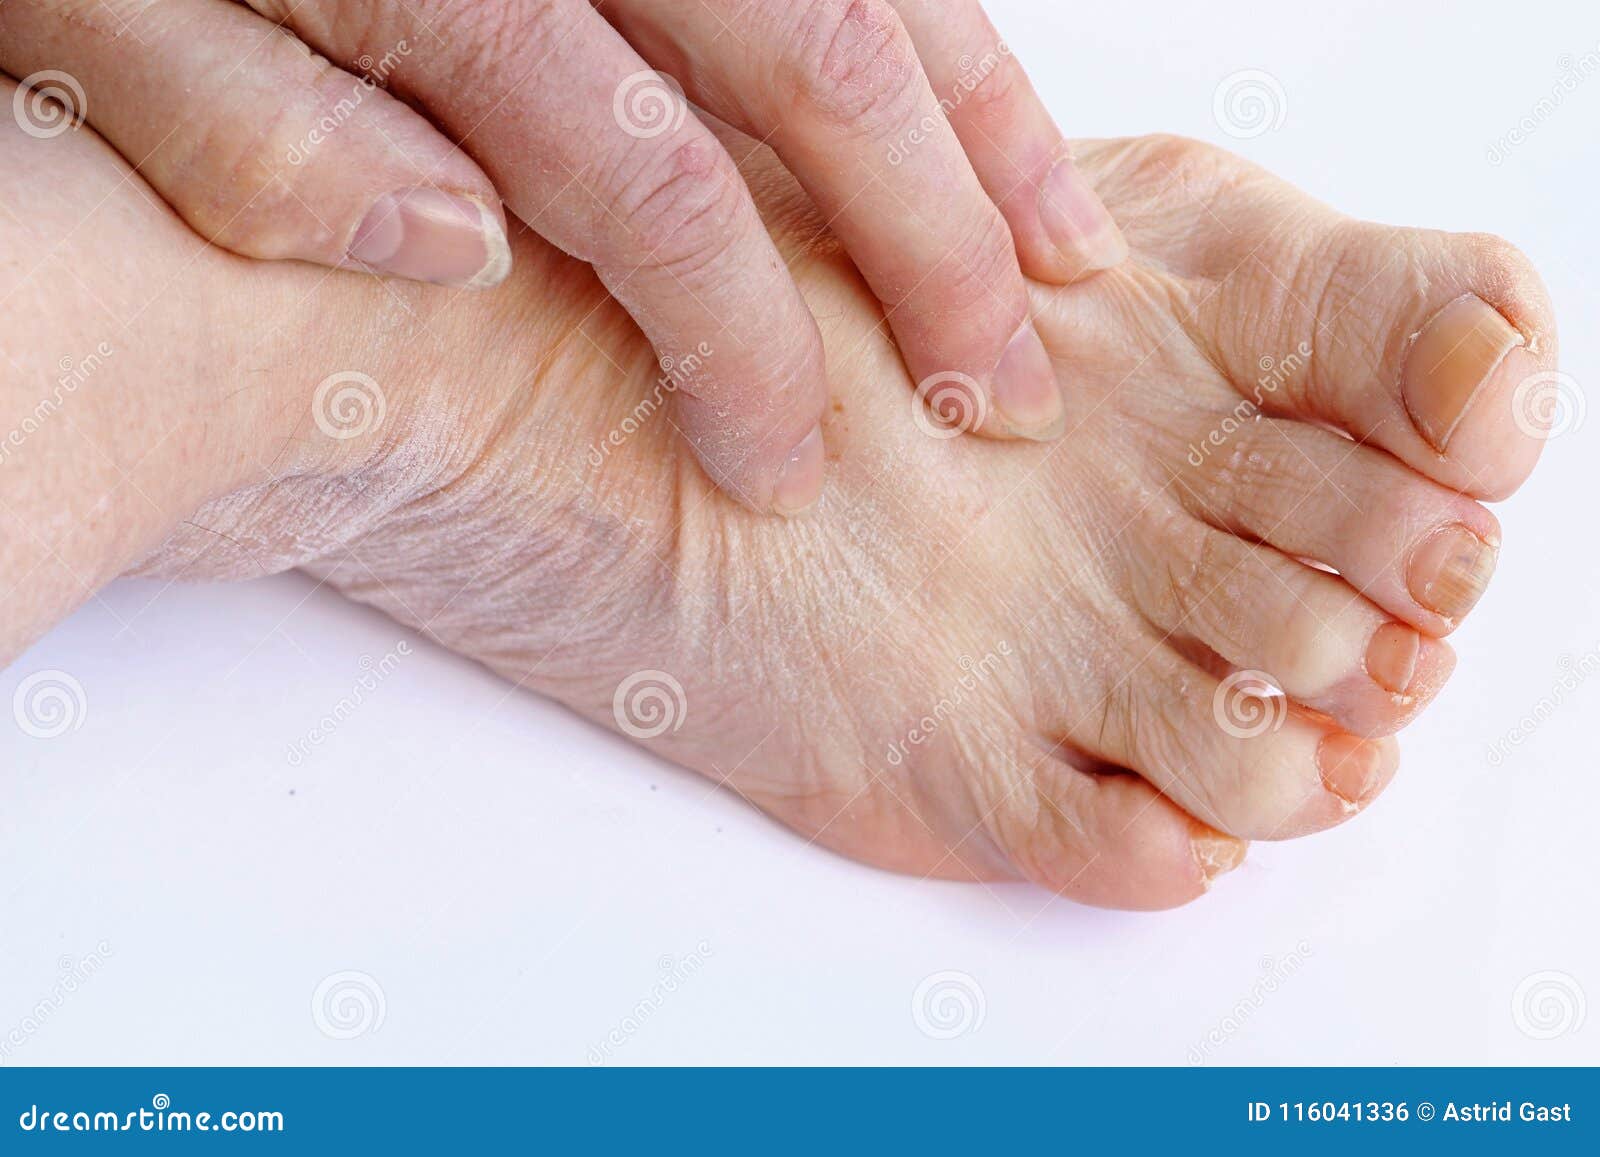 bevolking Scully Specialist Een Oudere Vrouw Heeft Jeukerige En Droge Huid Op Haar Handen En Voeten  Stock Foto - Image of gleuf, pijnlijk: 116041336